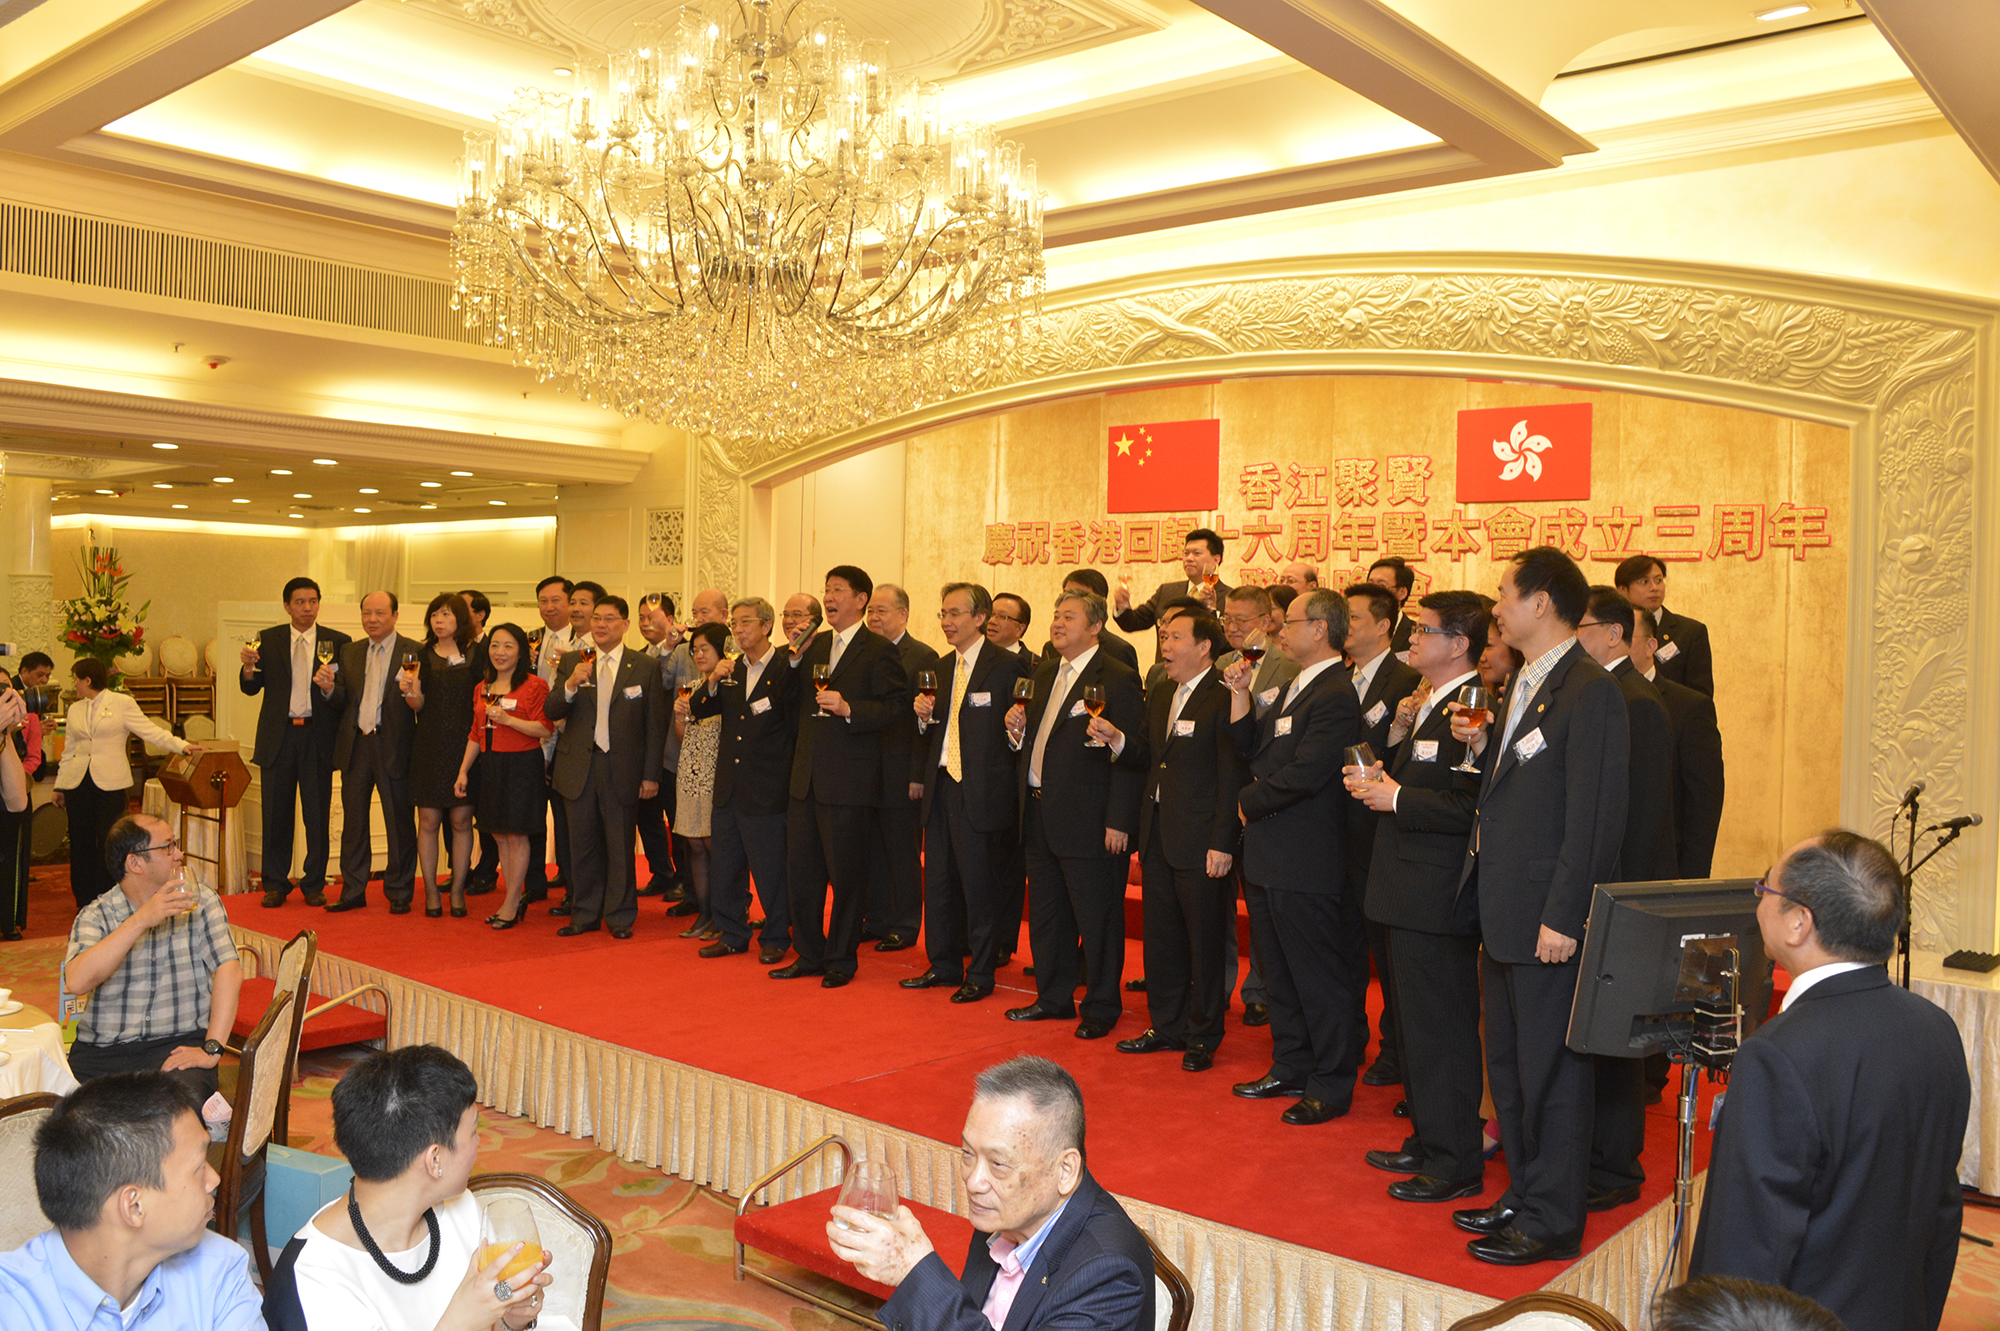 慶祝香港回歸十六周年暨本會成立三周年聯歡晚會